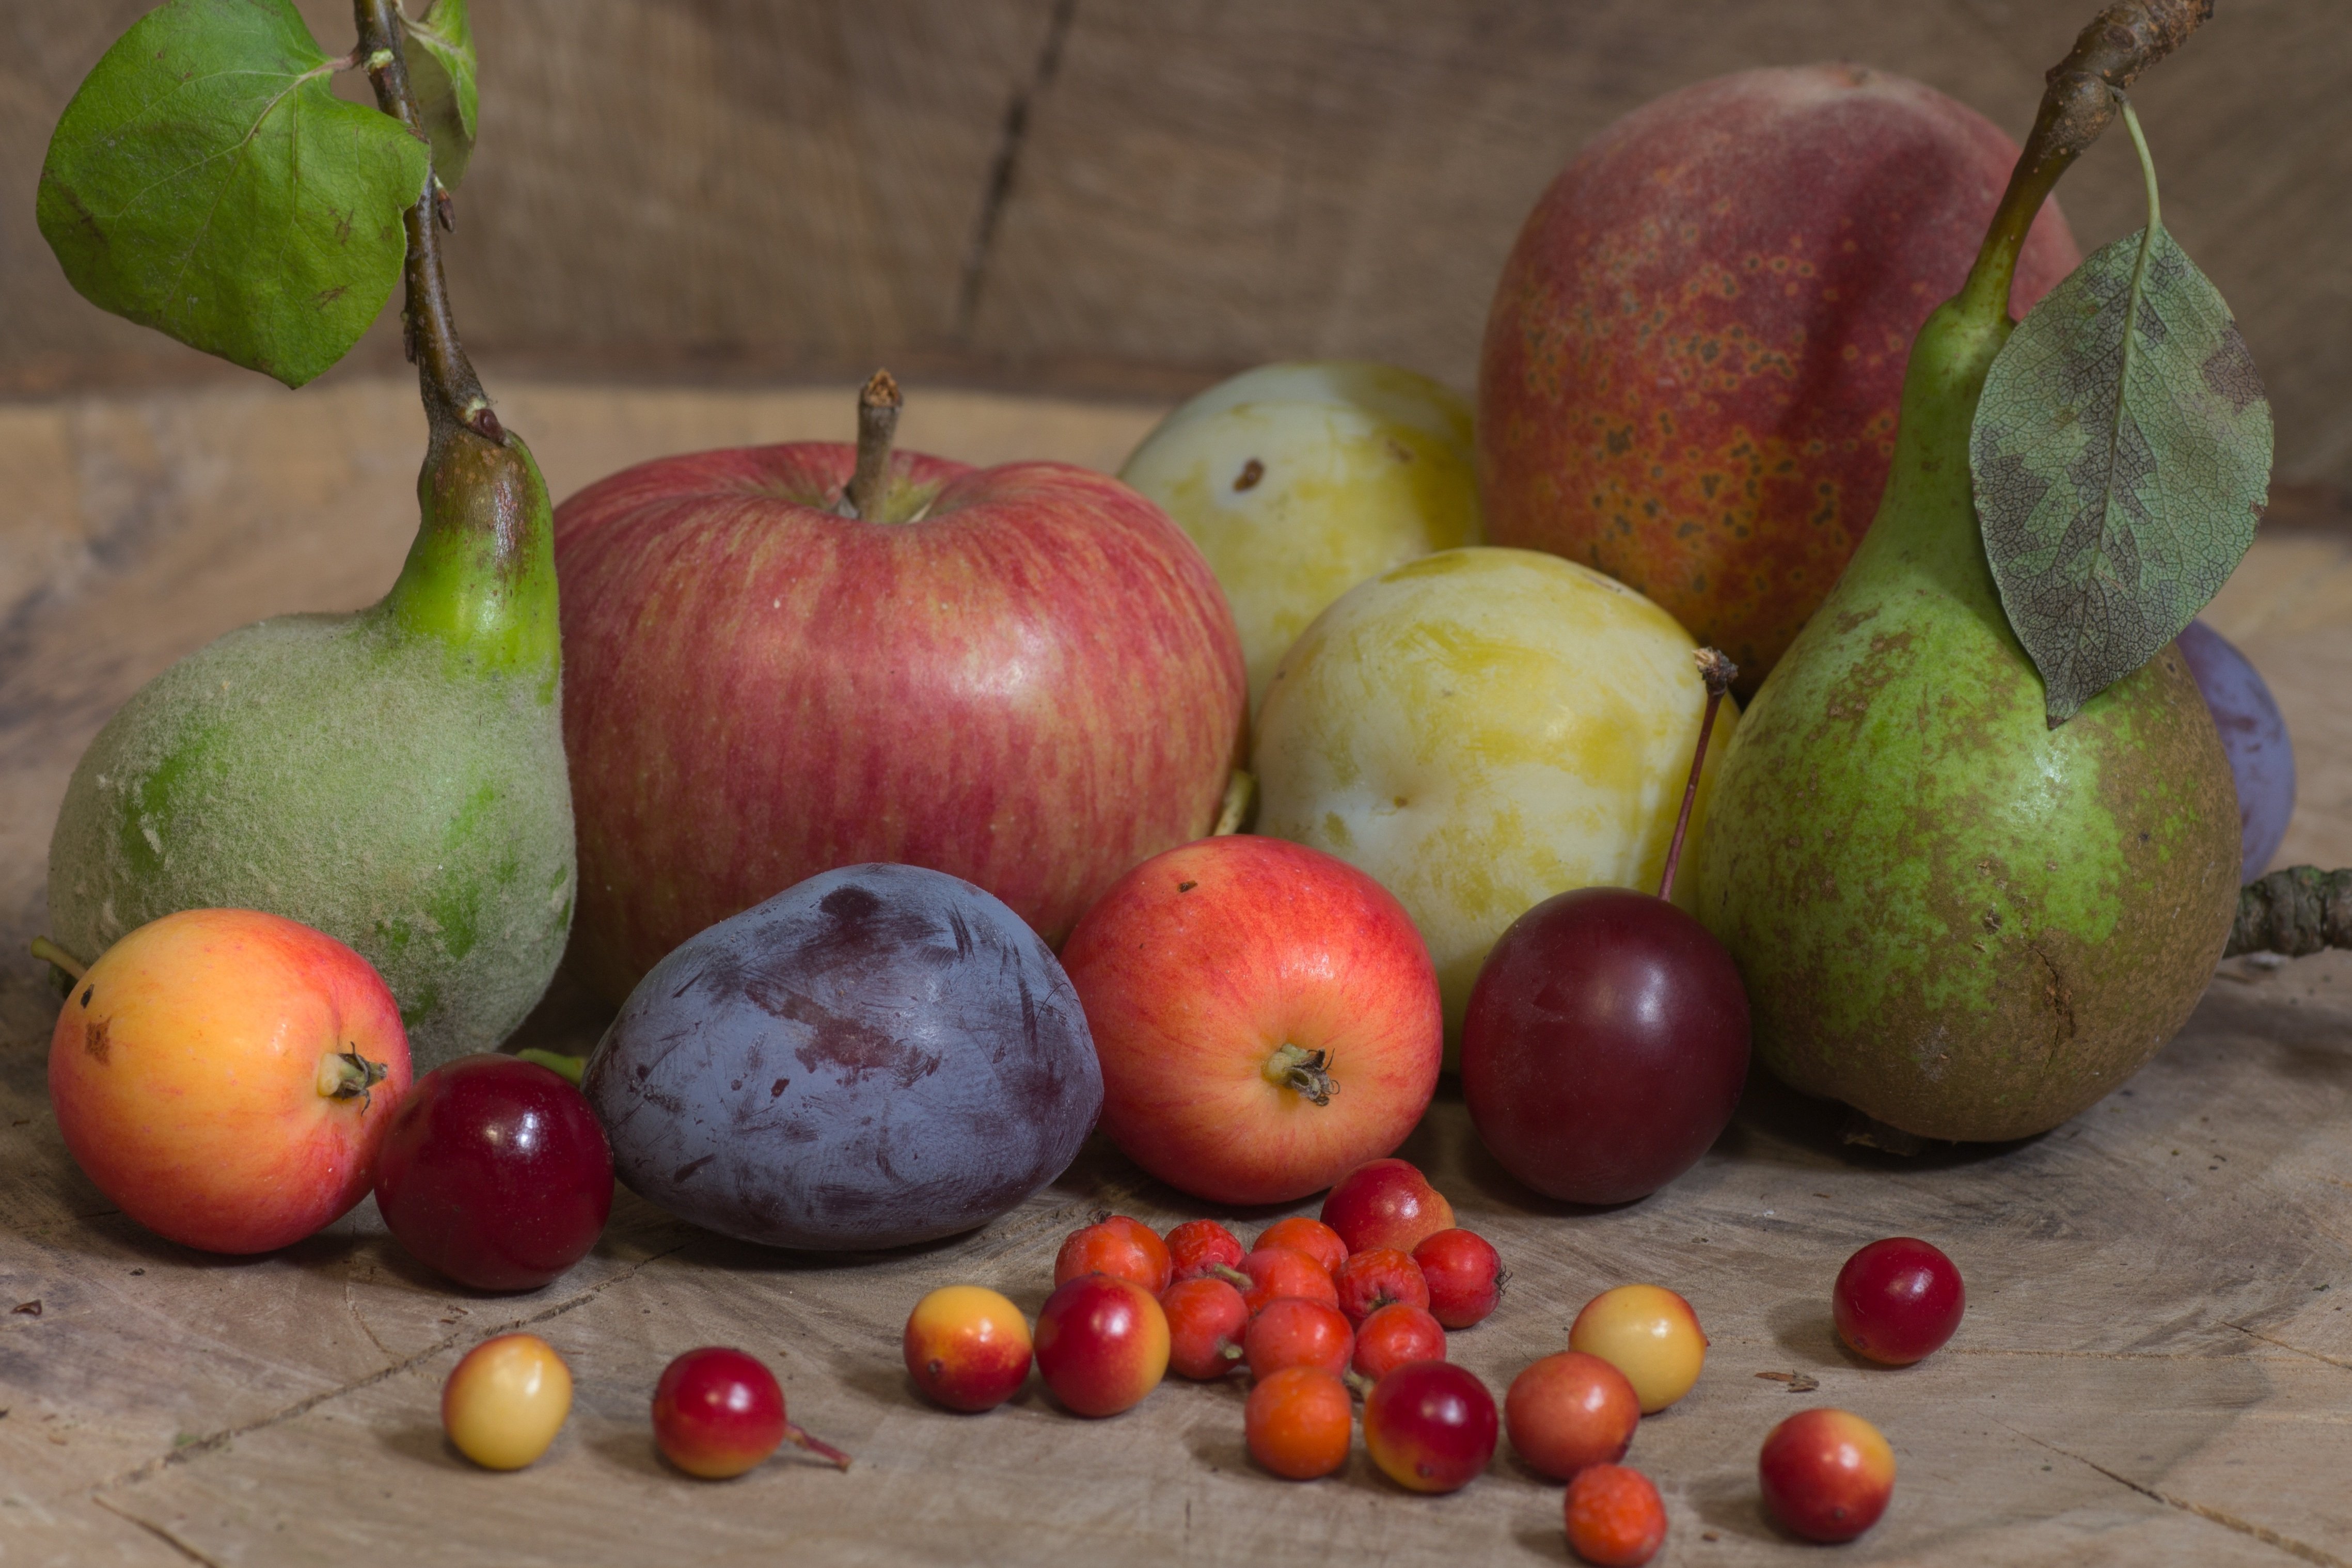 Яблоко фрукт или овощ. Натюрморт с фруктами. Натюрморт с яблоками. Фрукты яблоки груши.